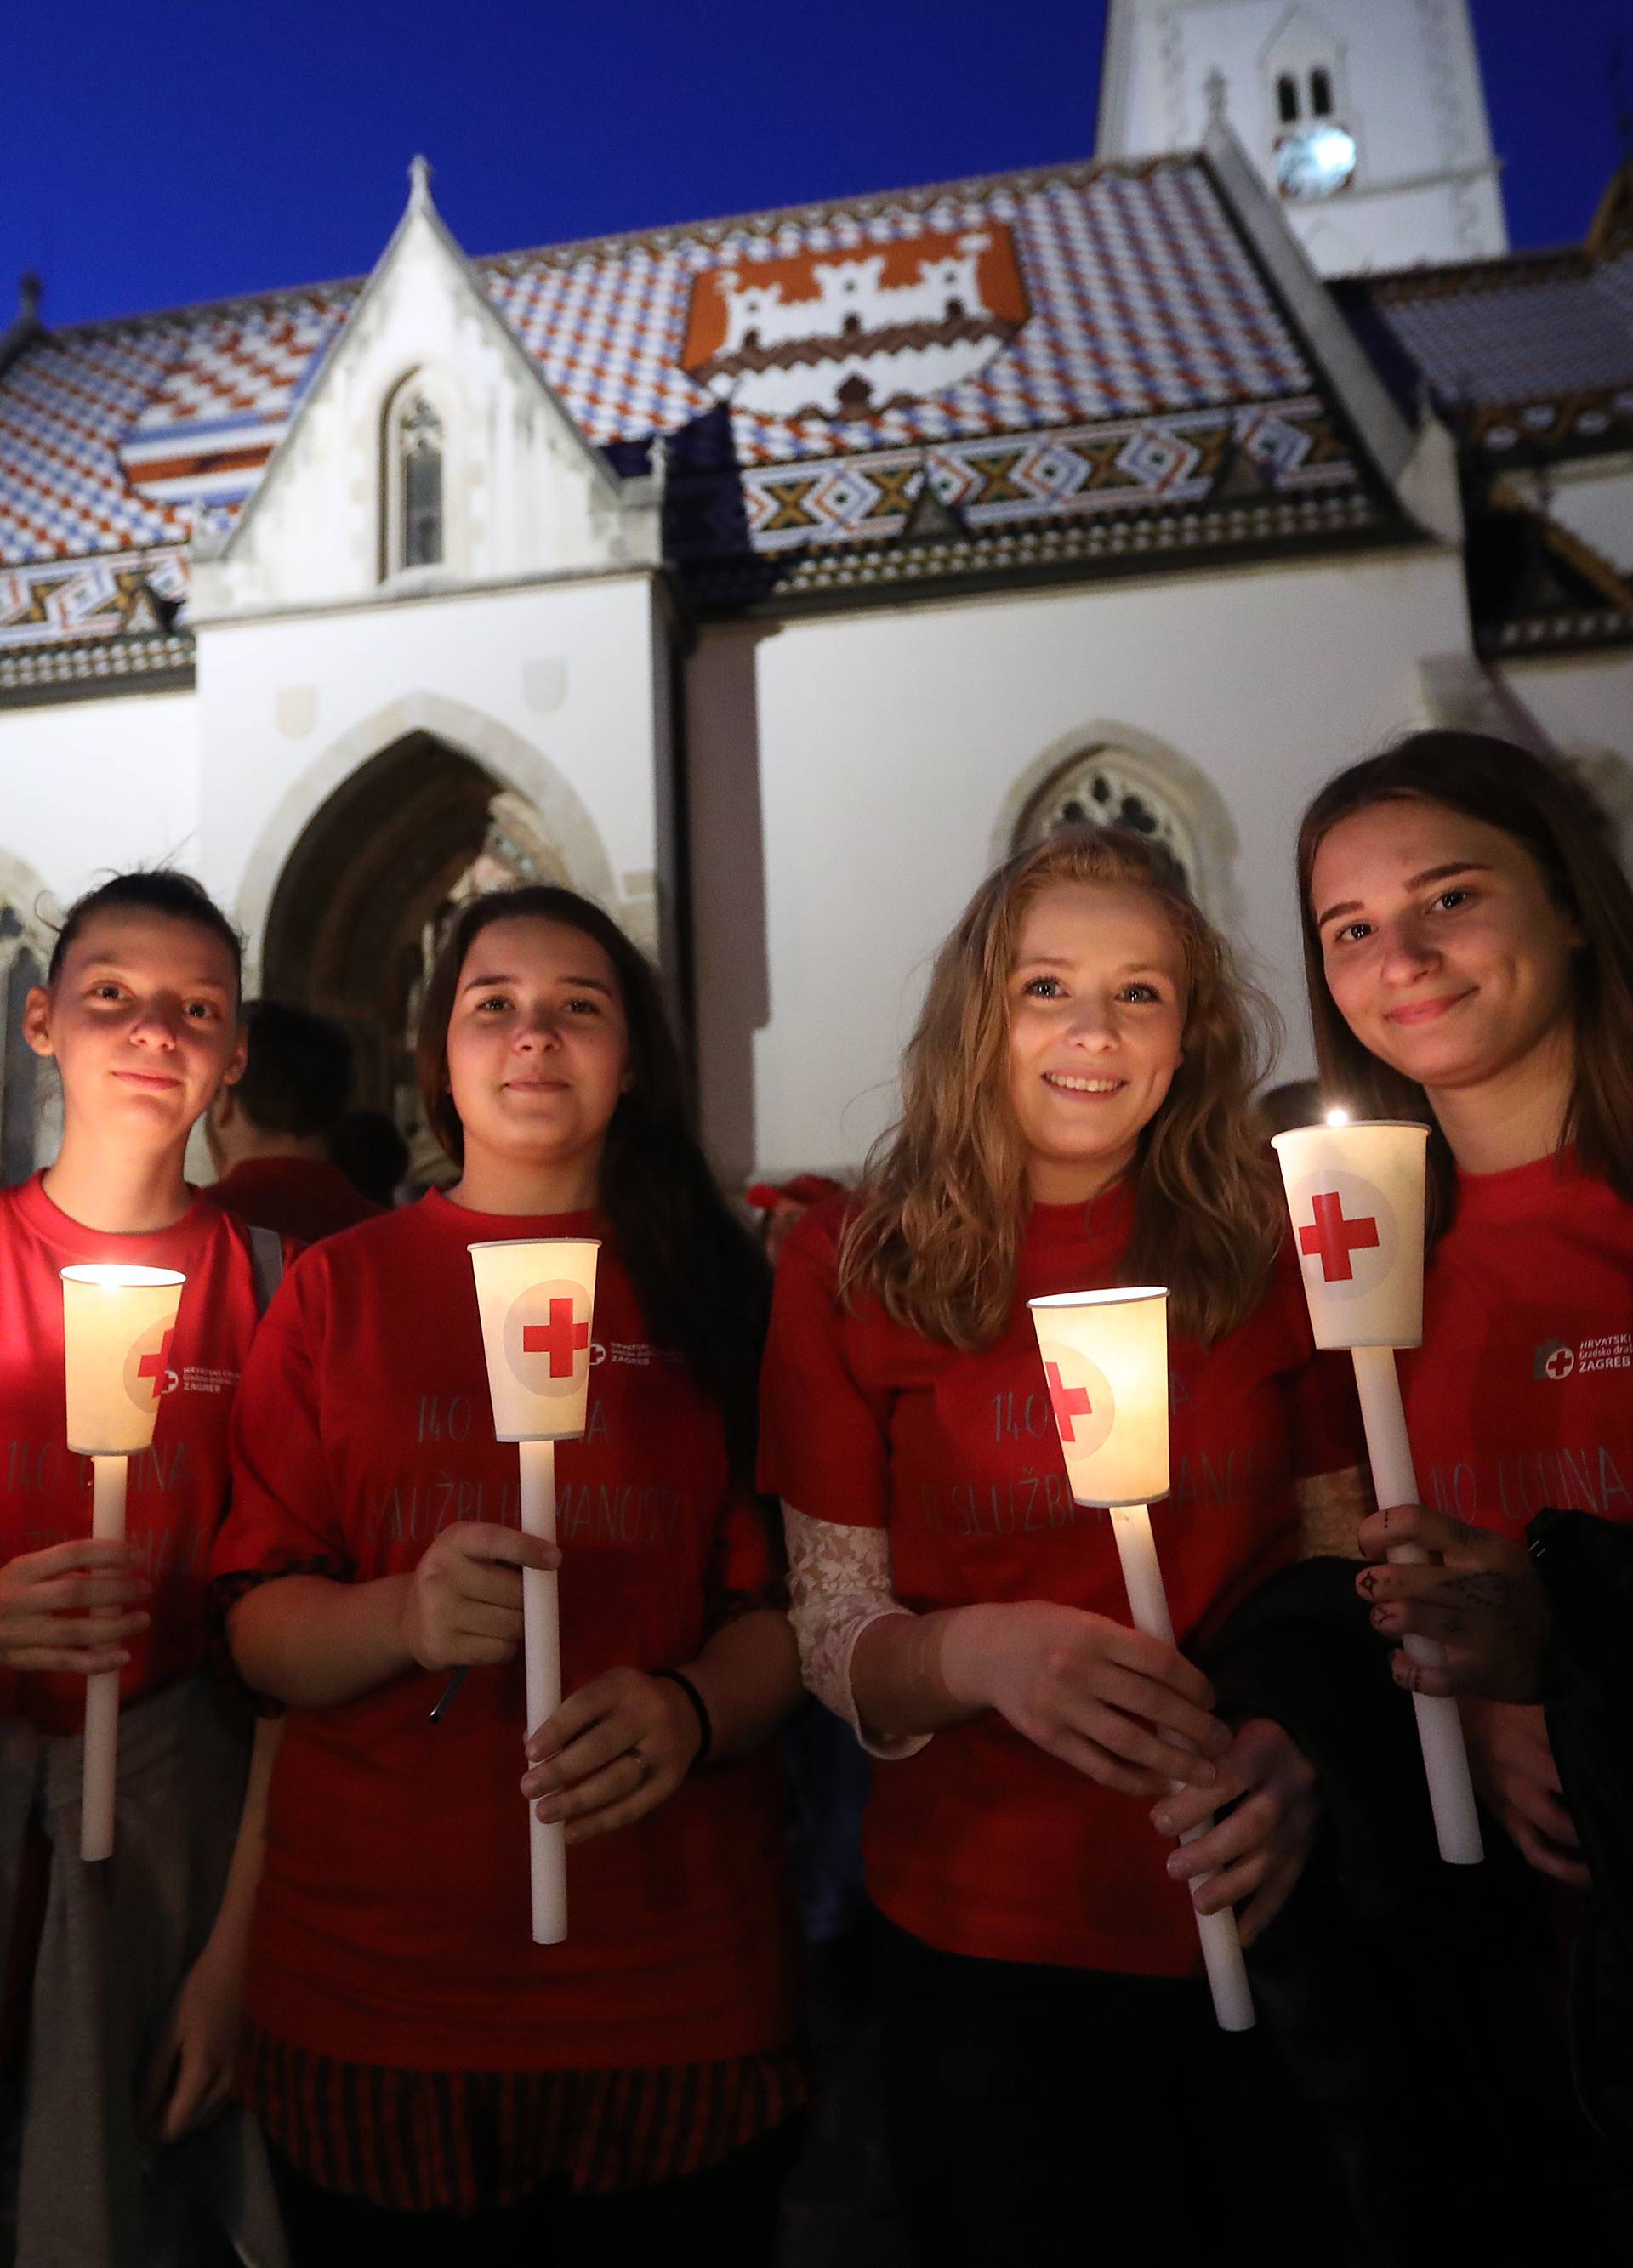 Mimohod s bakljama: Obilježili su 140 godina Crvenog križa